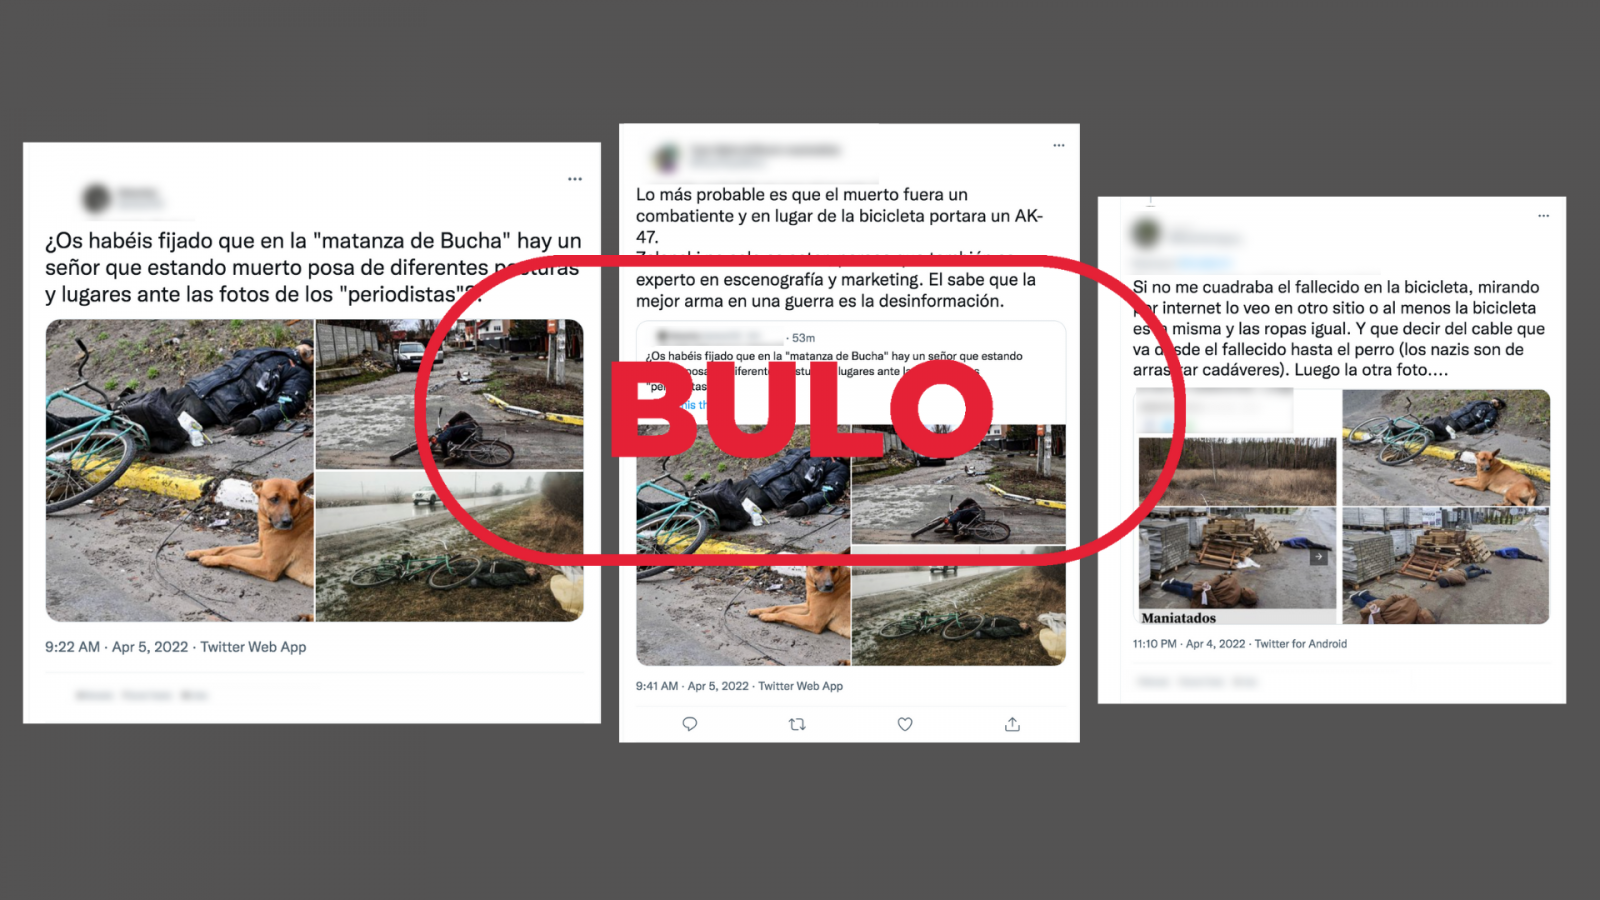 Mensajes de Twitter que reproducen el bulo de las imágenes de civiles muertos en Bucha, con el sello en rojo Bulo de VerificaRTVE